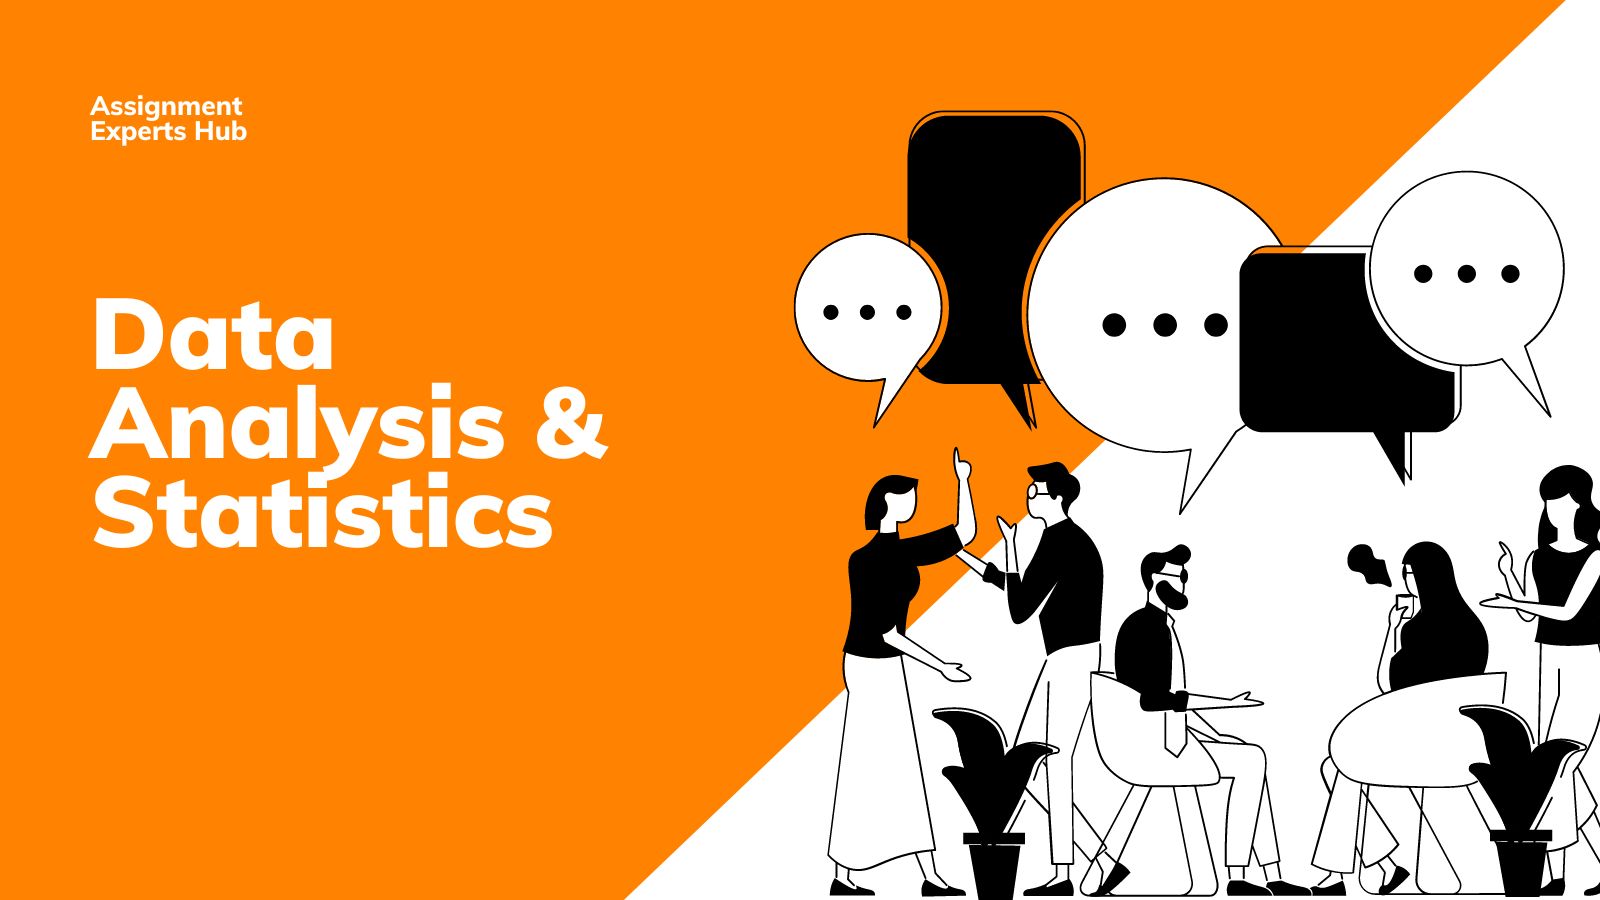 Data Analysis & Statistics